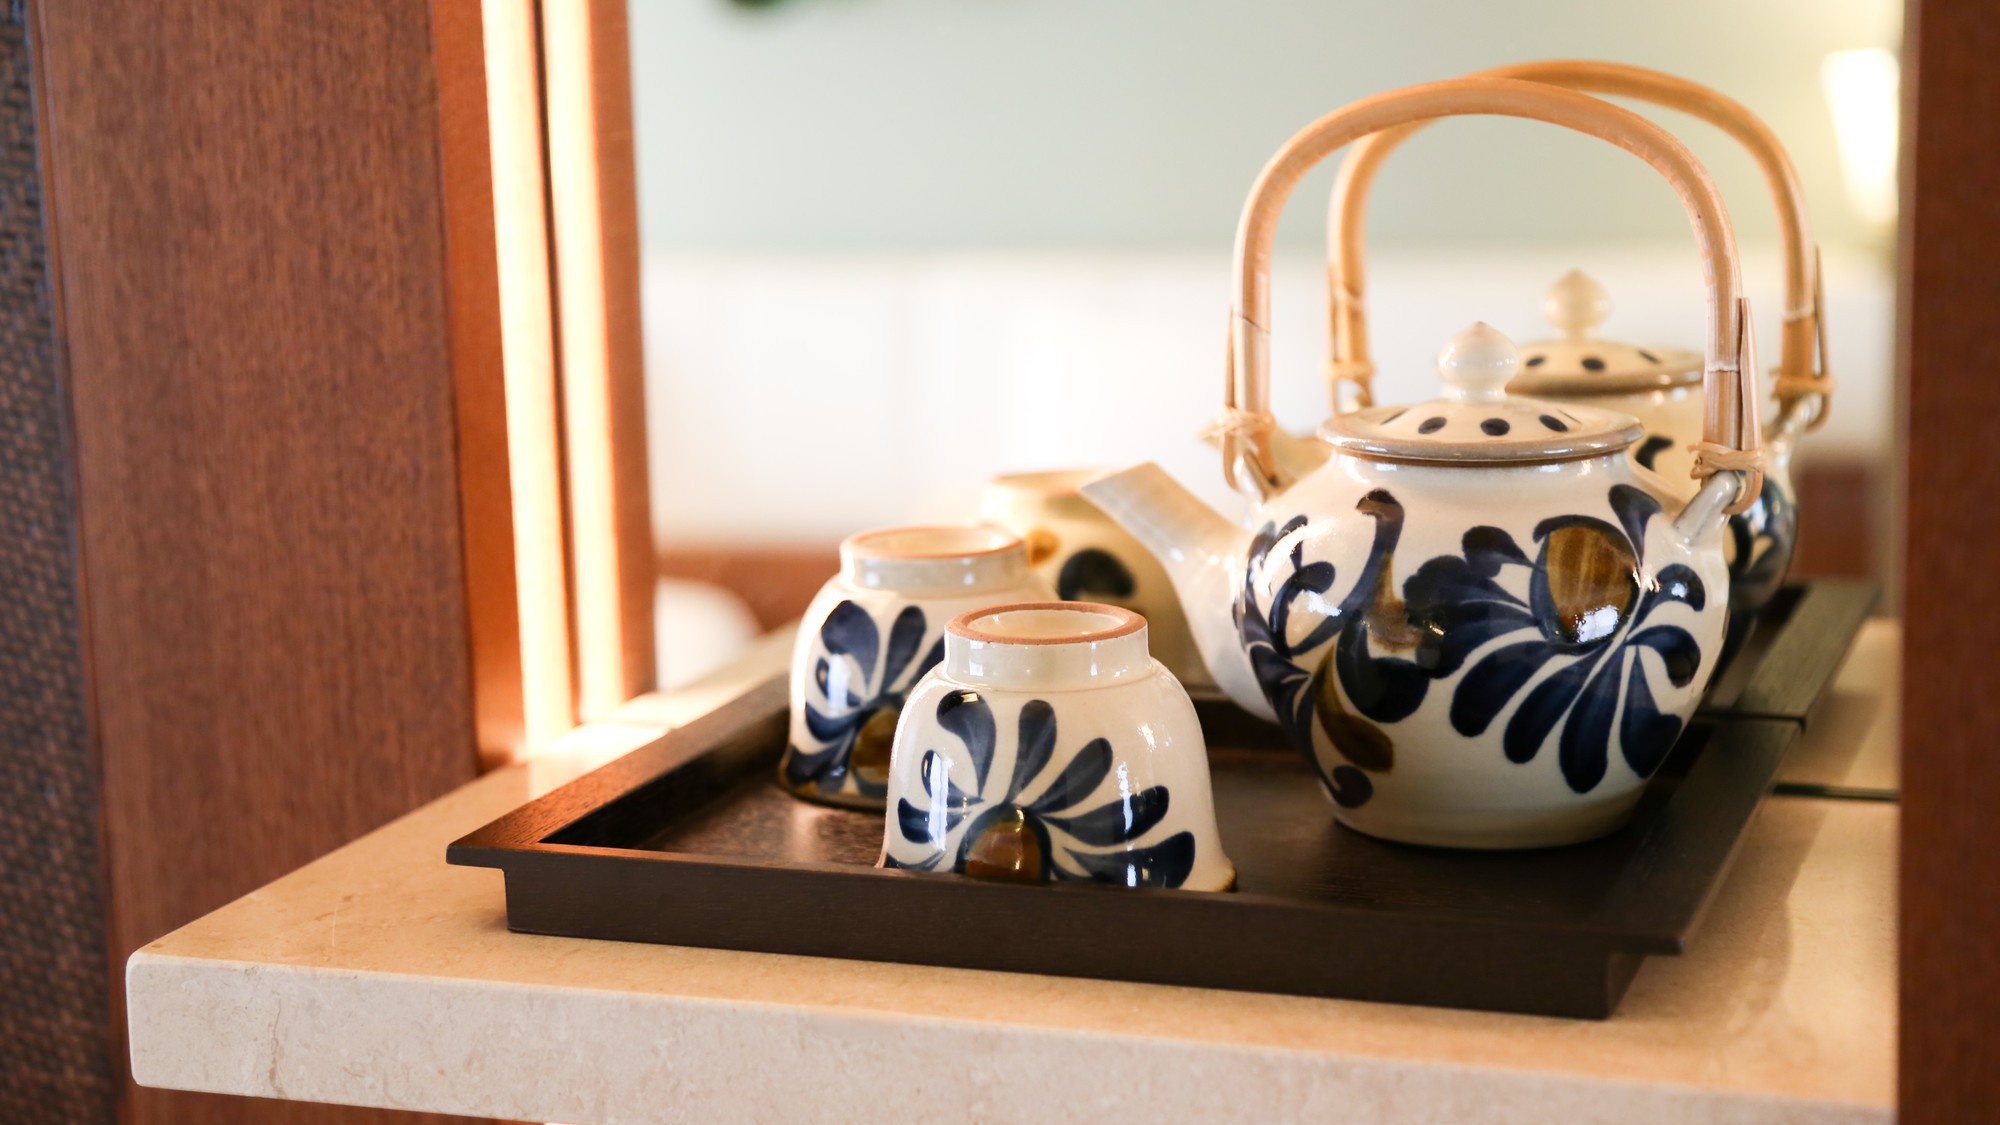 【沖縄伝統工芸品】やちむんの茶器を使って、優雅なティータイムを楽しんでみてはいかがでしょうか